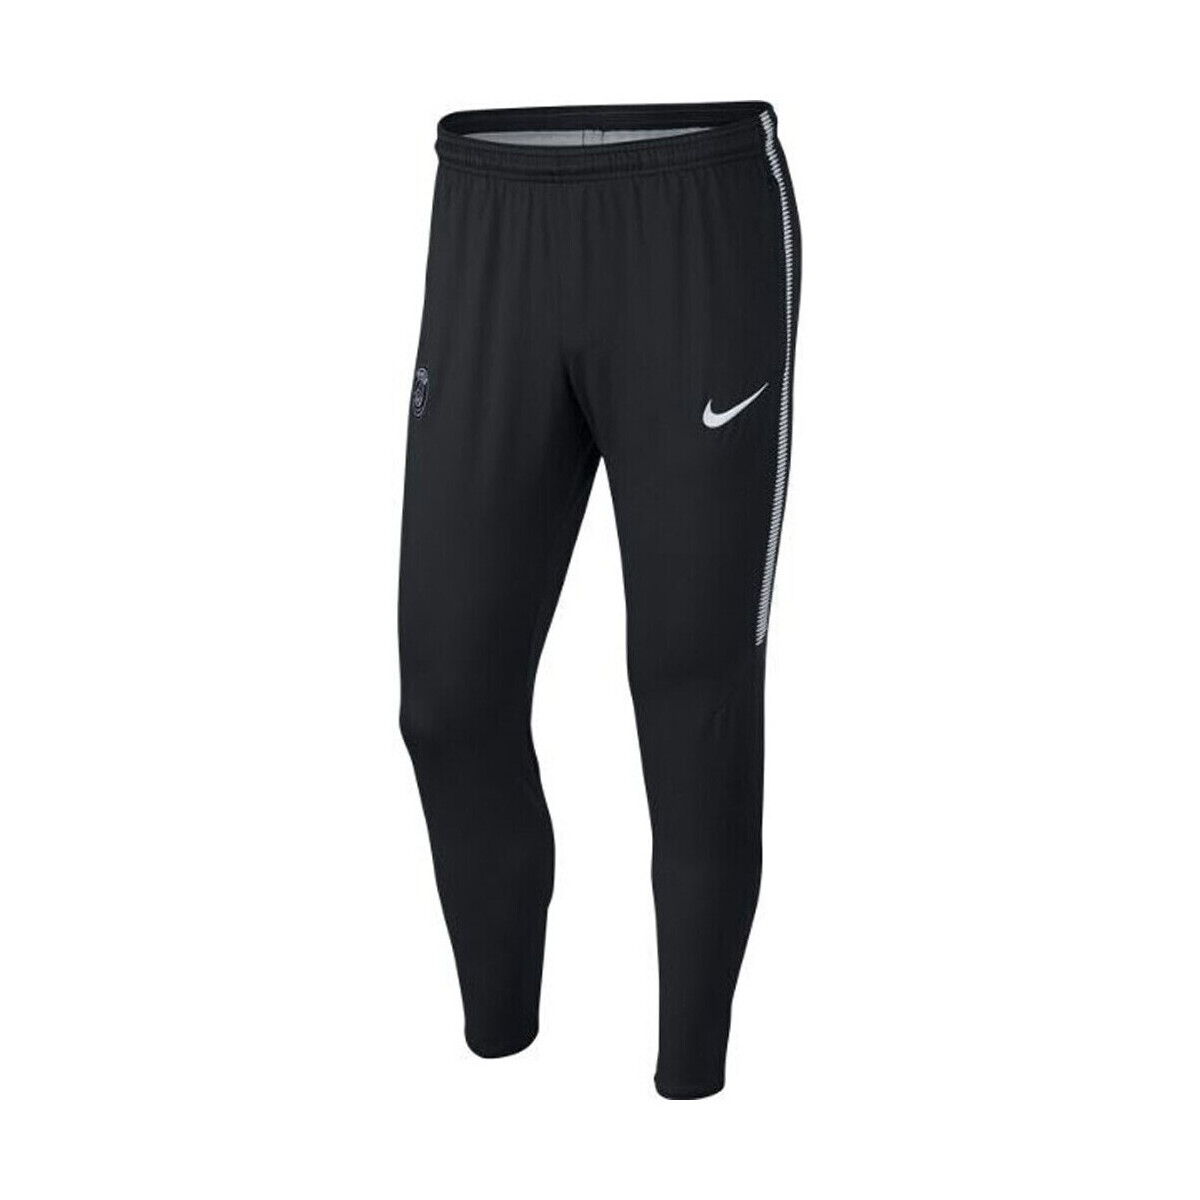 Vêtements Homme Pantalons de survêtement Nike Paris Saint-Germain Dry Squad Noir